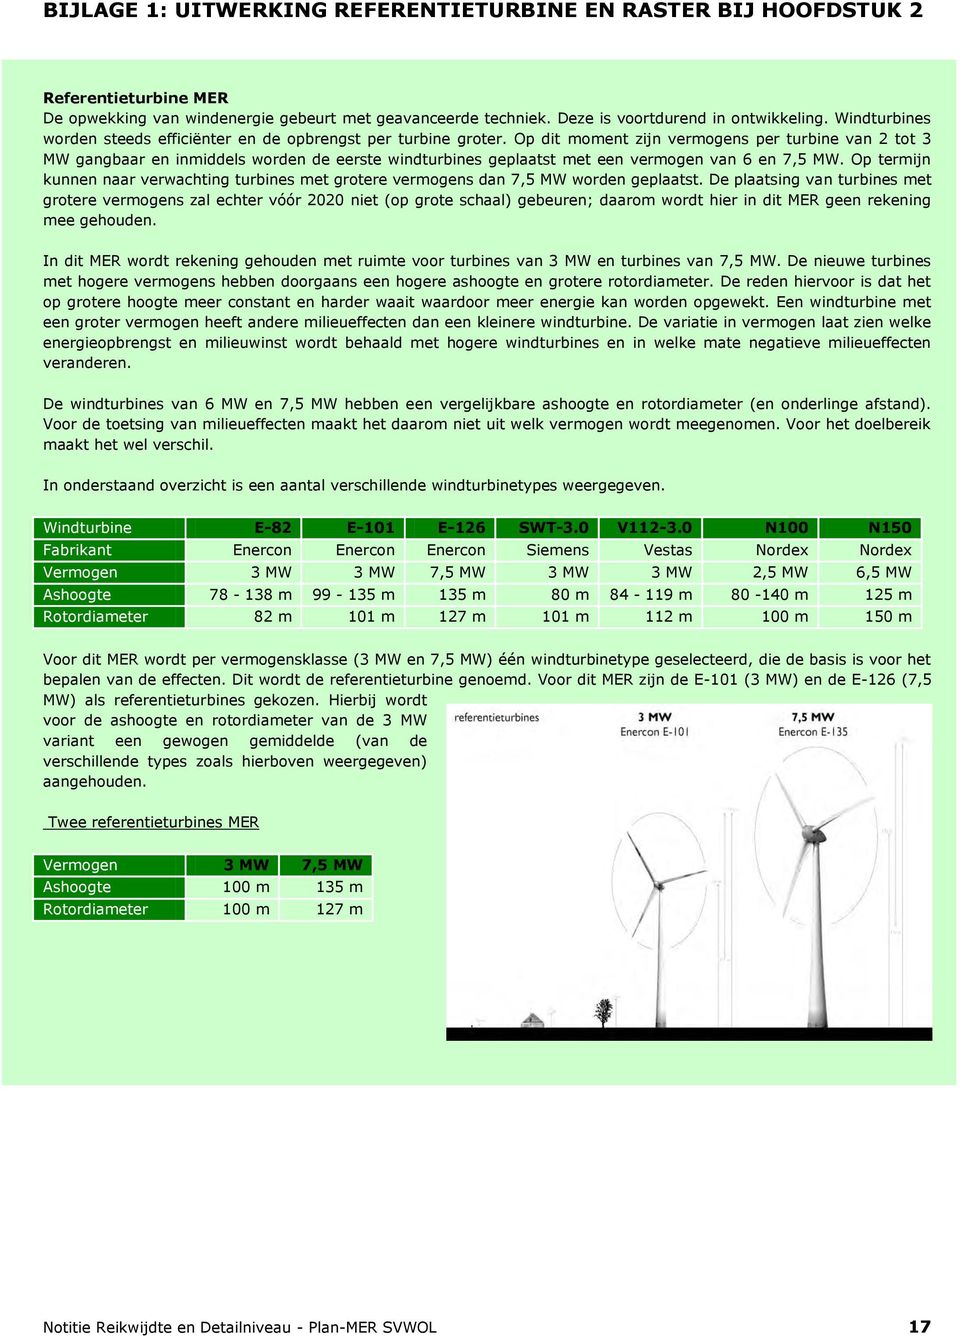 Op dit moment zijn vermogens per turbine van 2 tot 3 MW gangbaar en inmiddels worden de eerste windturbines geplaatst met een vermogen van 6 en 7,5 MW.